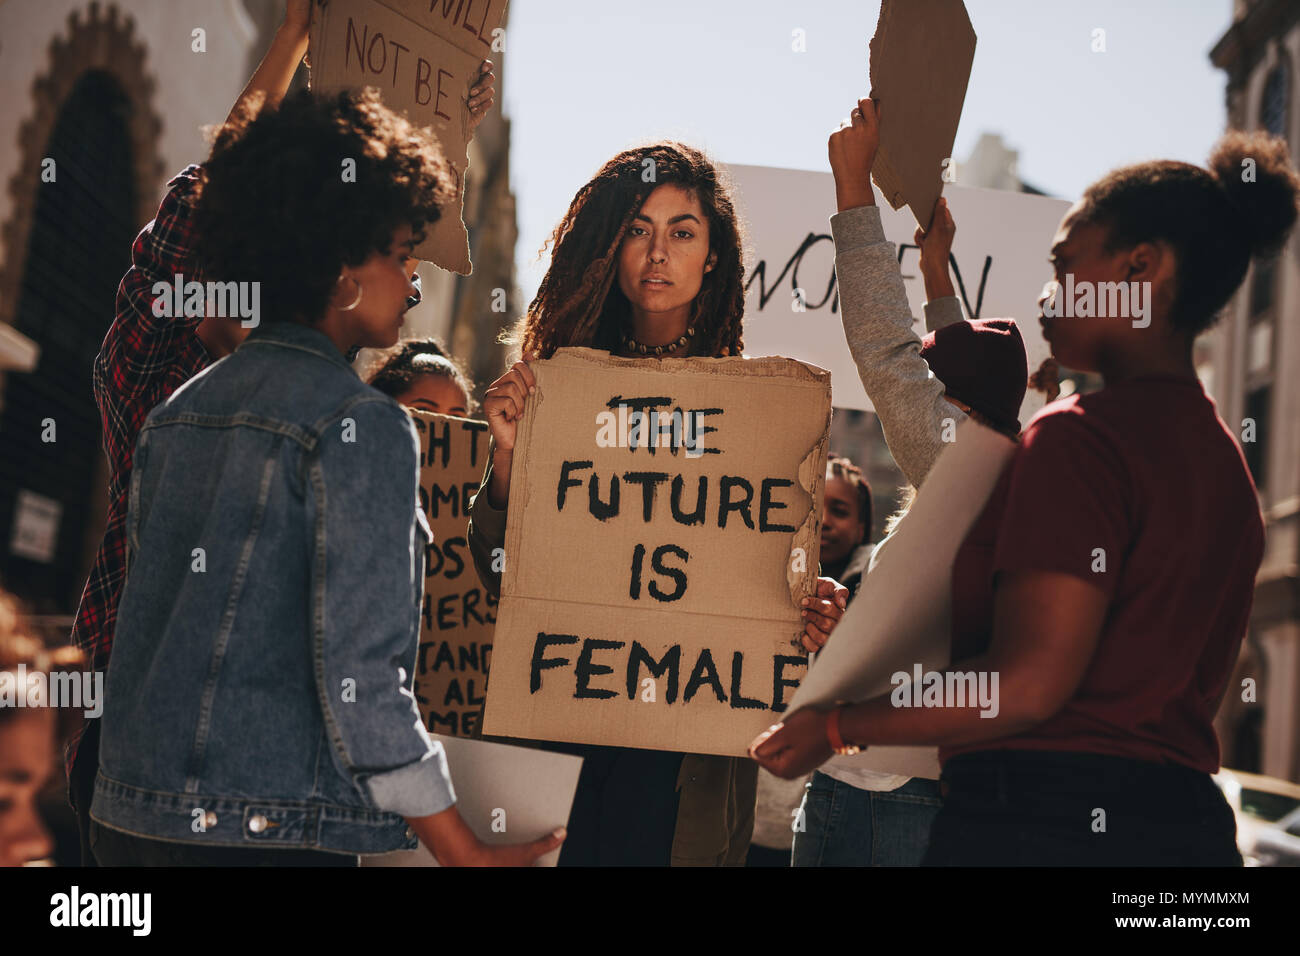 Les manifestantes tiennent des signes de l'avenir est de sexe féminin. Groupe de femmes qui protestaient à l'extérieur pour l'autonomisation des femmes. Banque D'Images